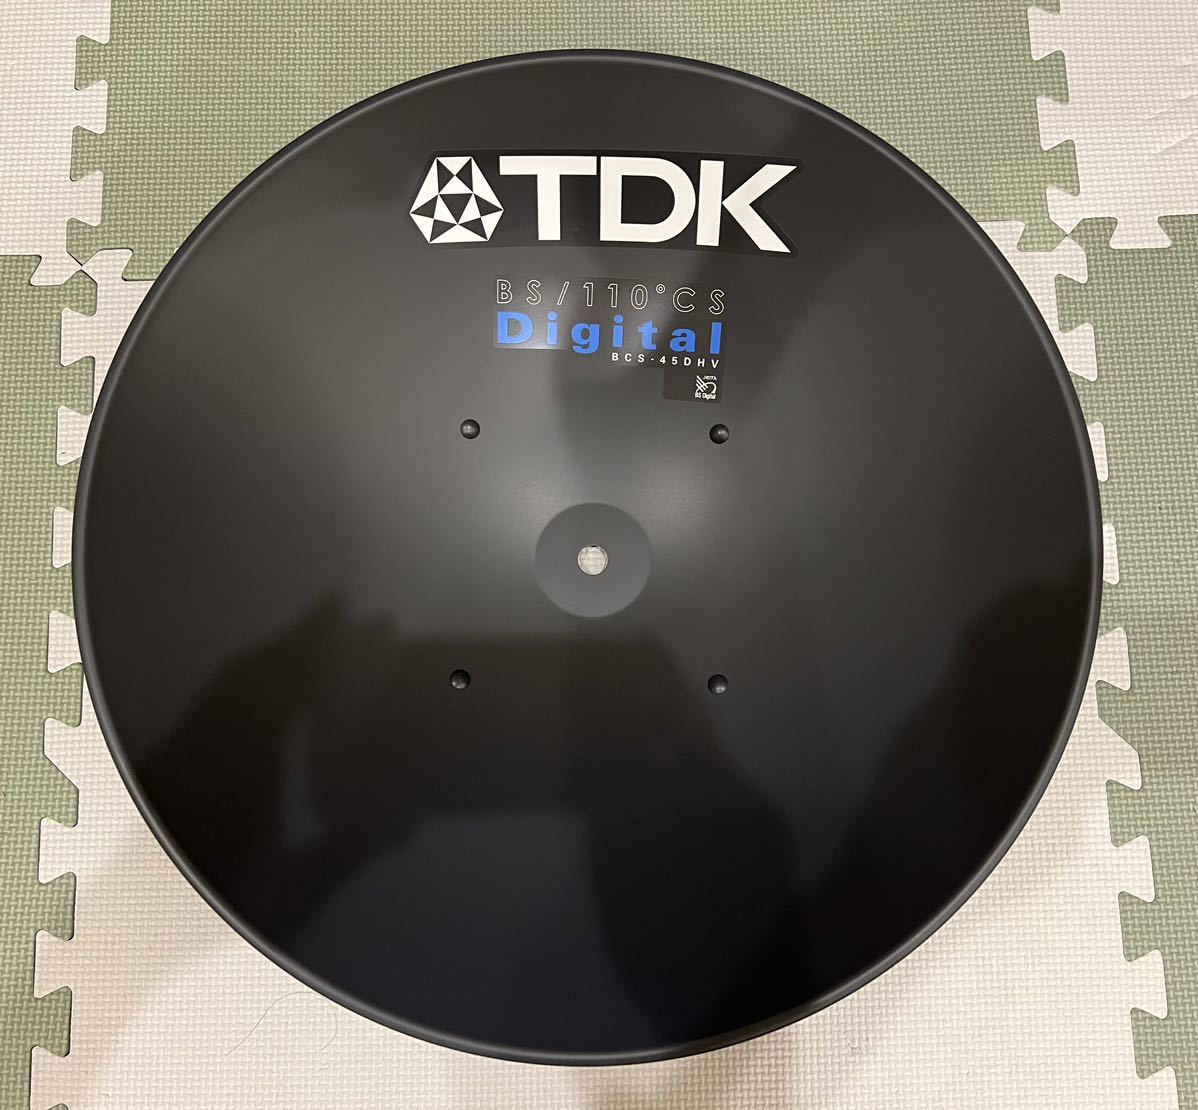 希少 新品 未使用 BCS-45DHV KITB BS / 110° CSアンテナ ベランダ取付タイプ TDK_画像2